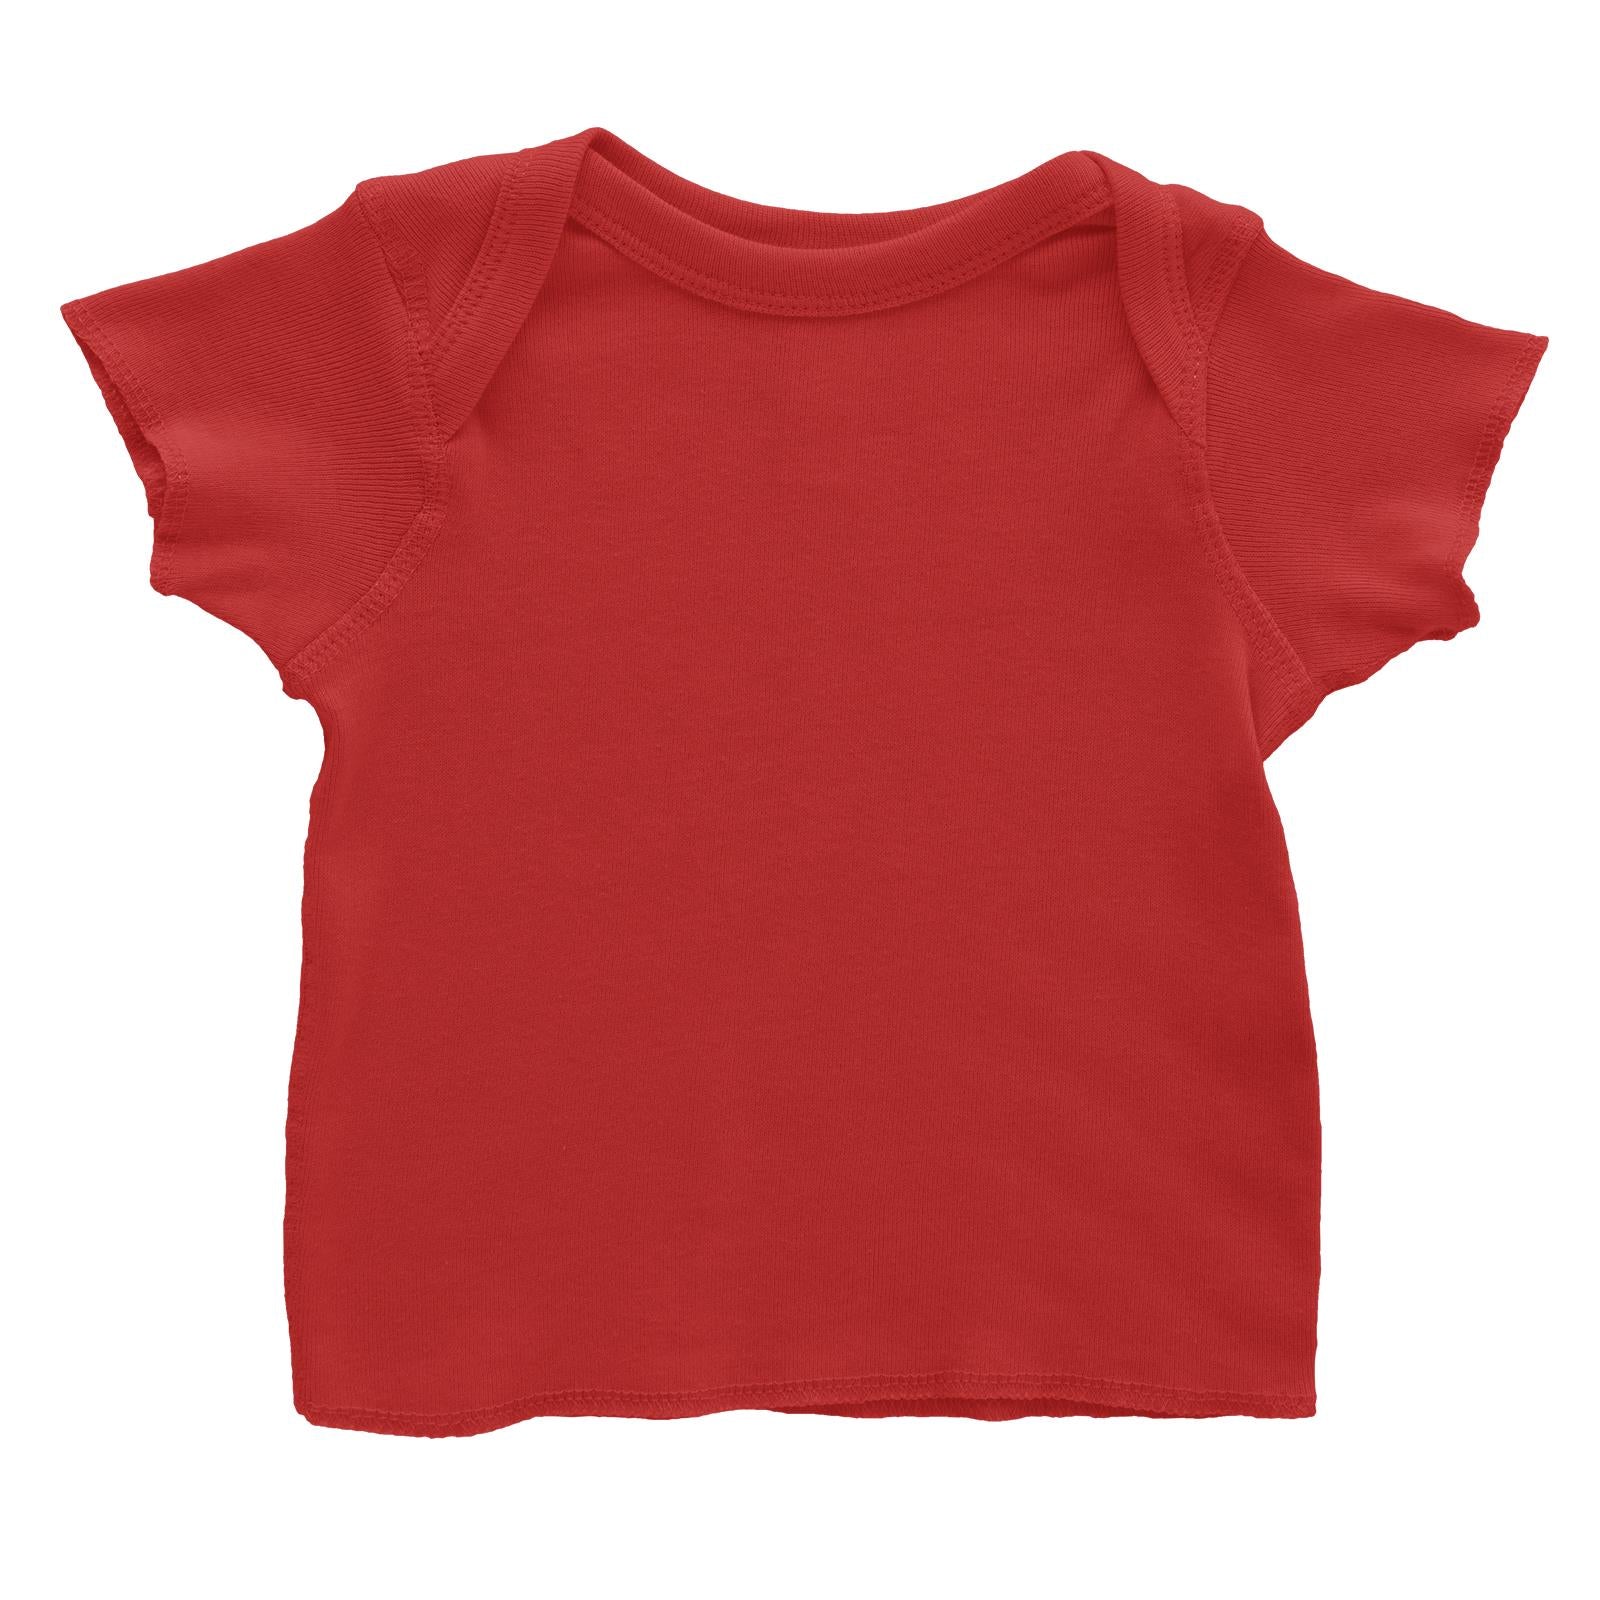 Blank Baby T-Shirt Baby T-Shirt